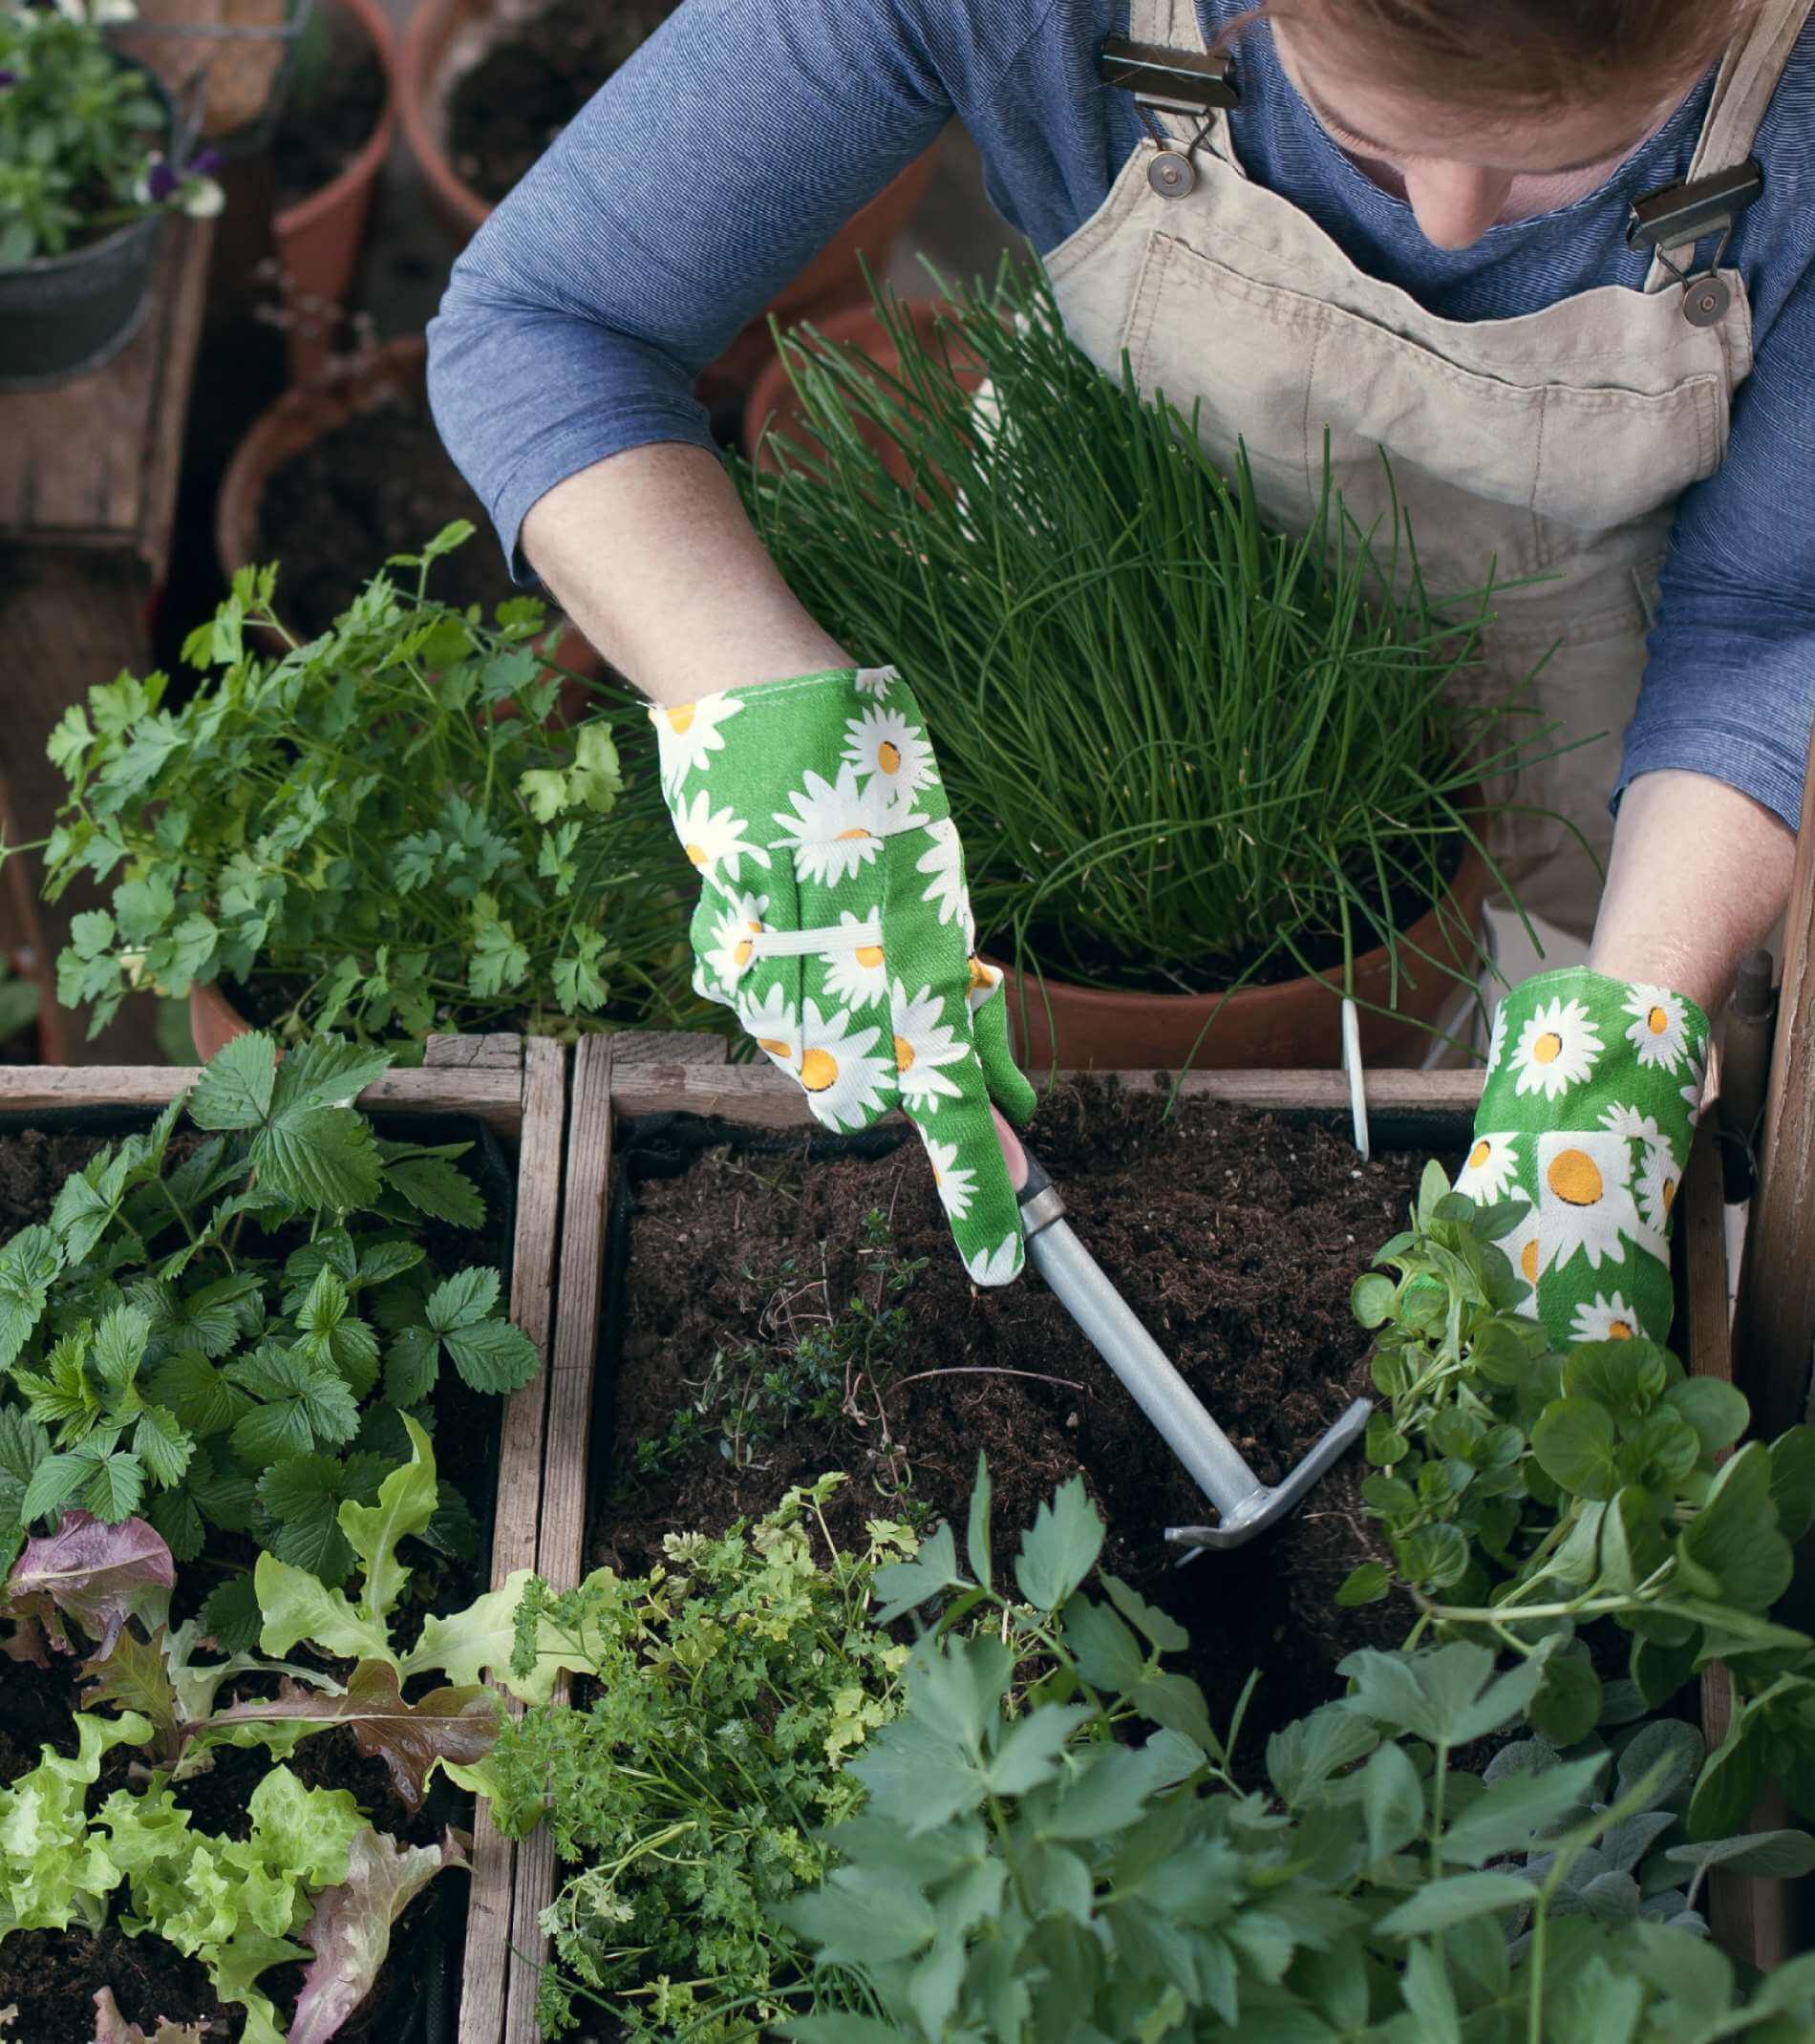 Frau pflanzt Gemüse und Kräuter im Hochbeet am Balkon